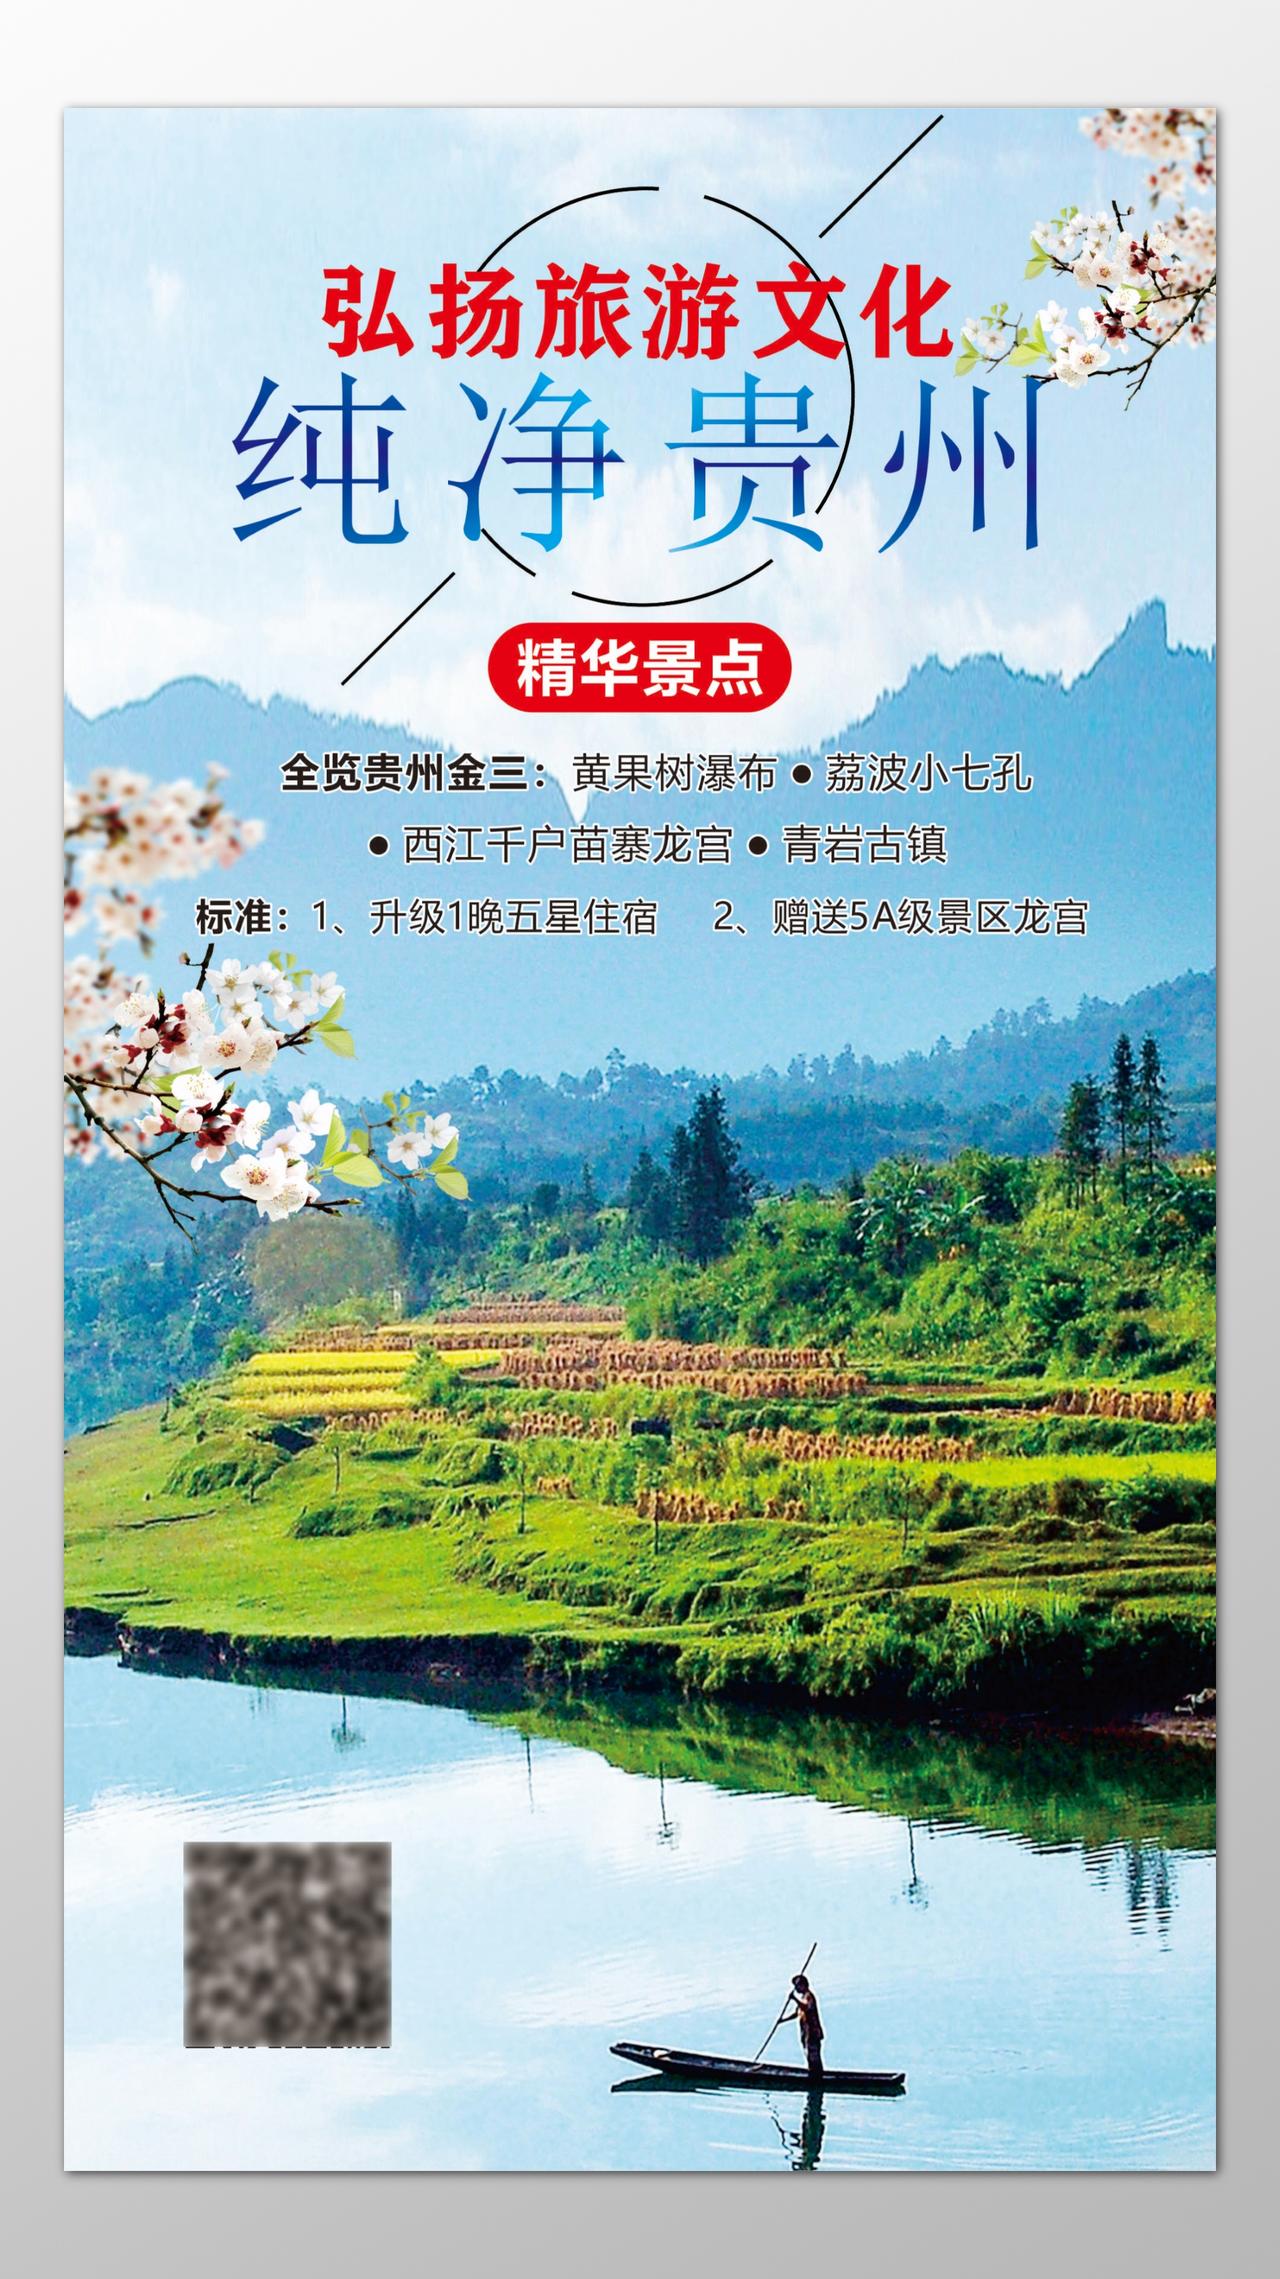 贵州旅游精华景点黄果树瀑布五星级住宿青岩古镇海报模板